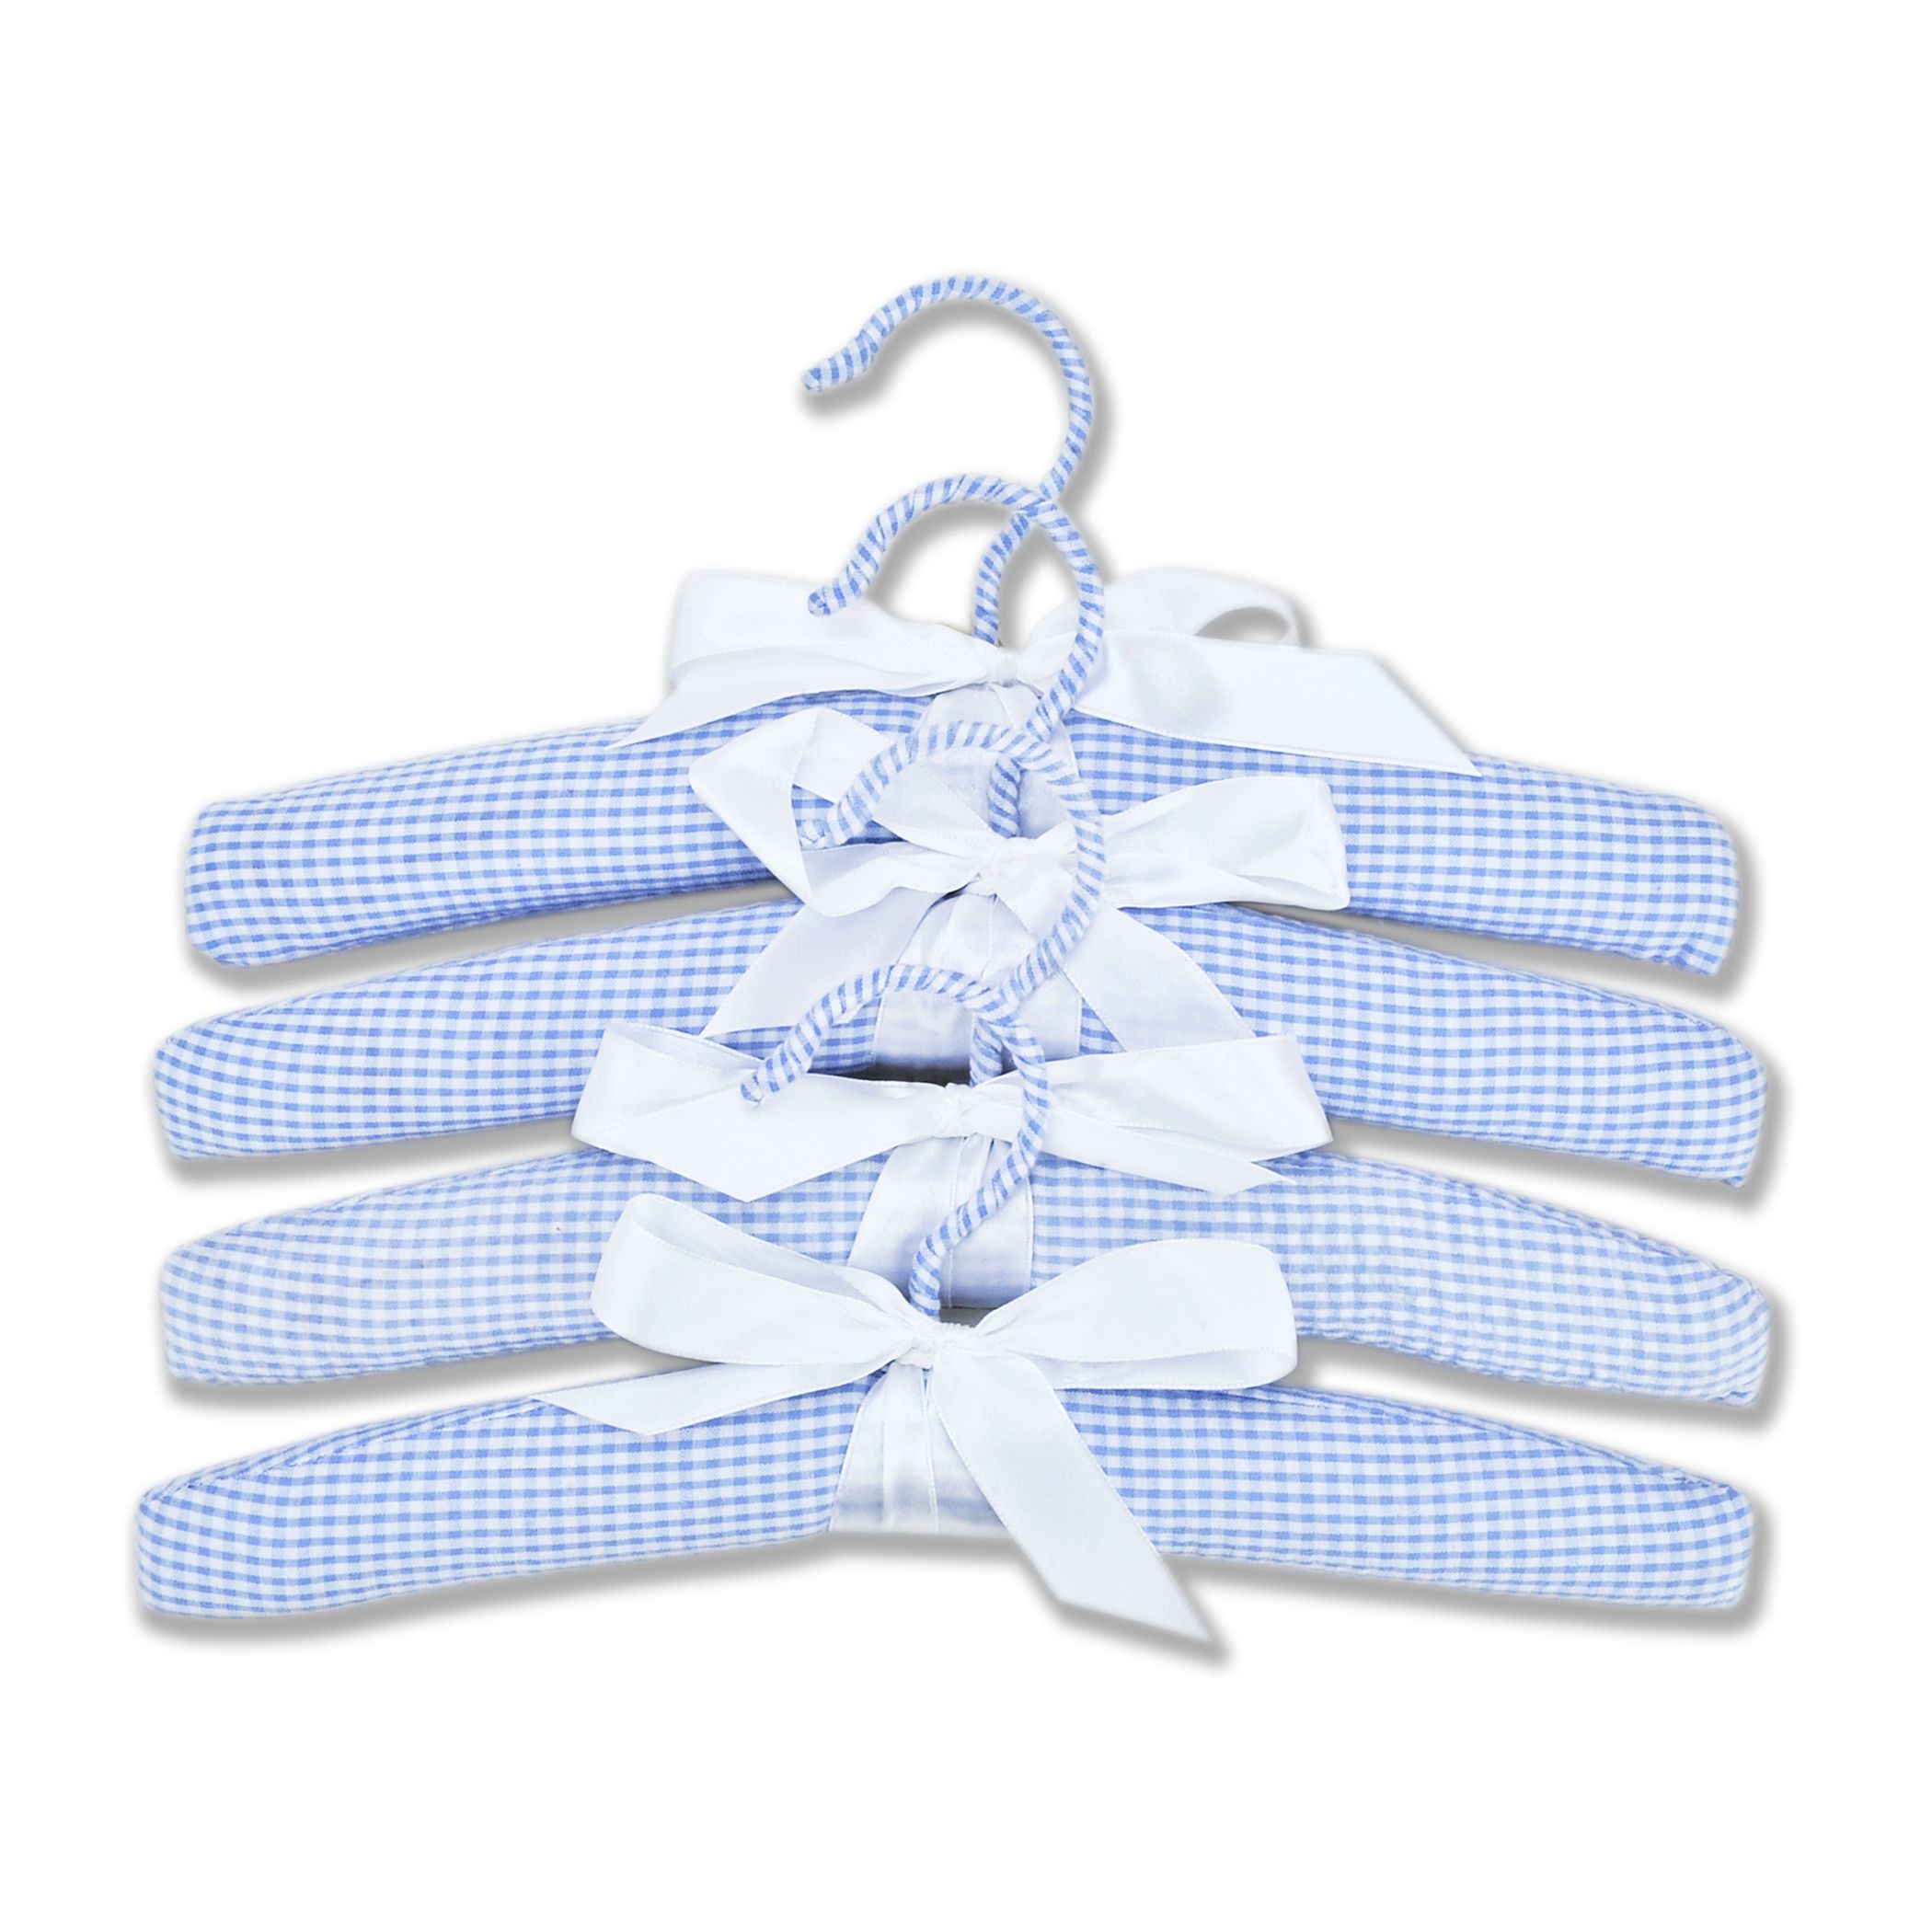 Nursery Hangers - 4 Pack Blue Gingham Seersucker Set by Trend Lab | Walmart (US)